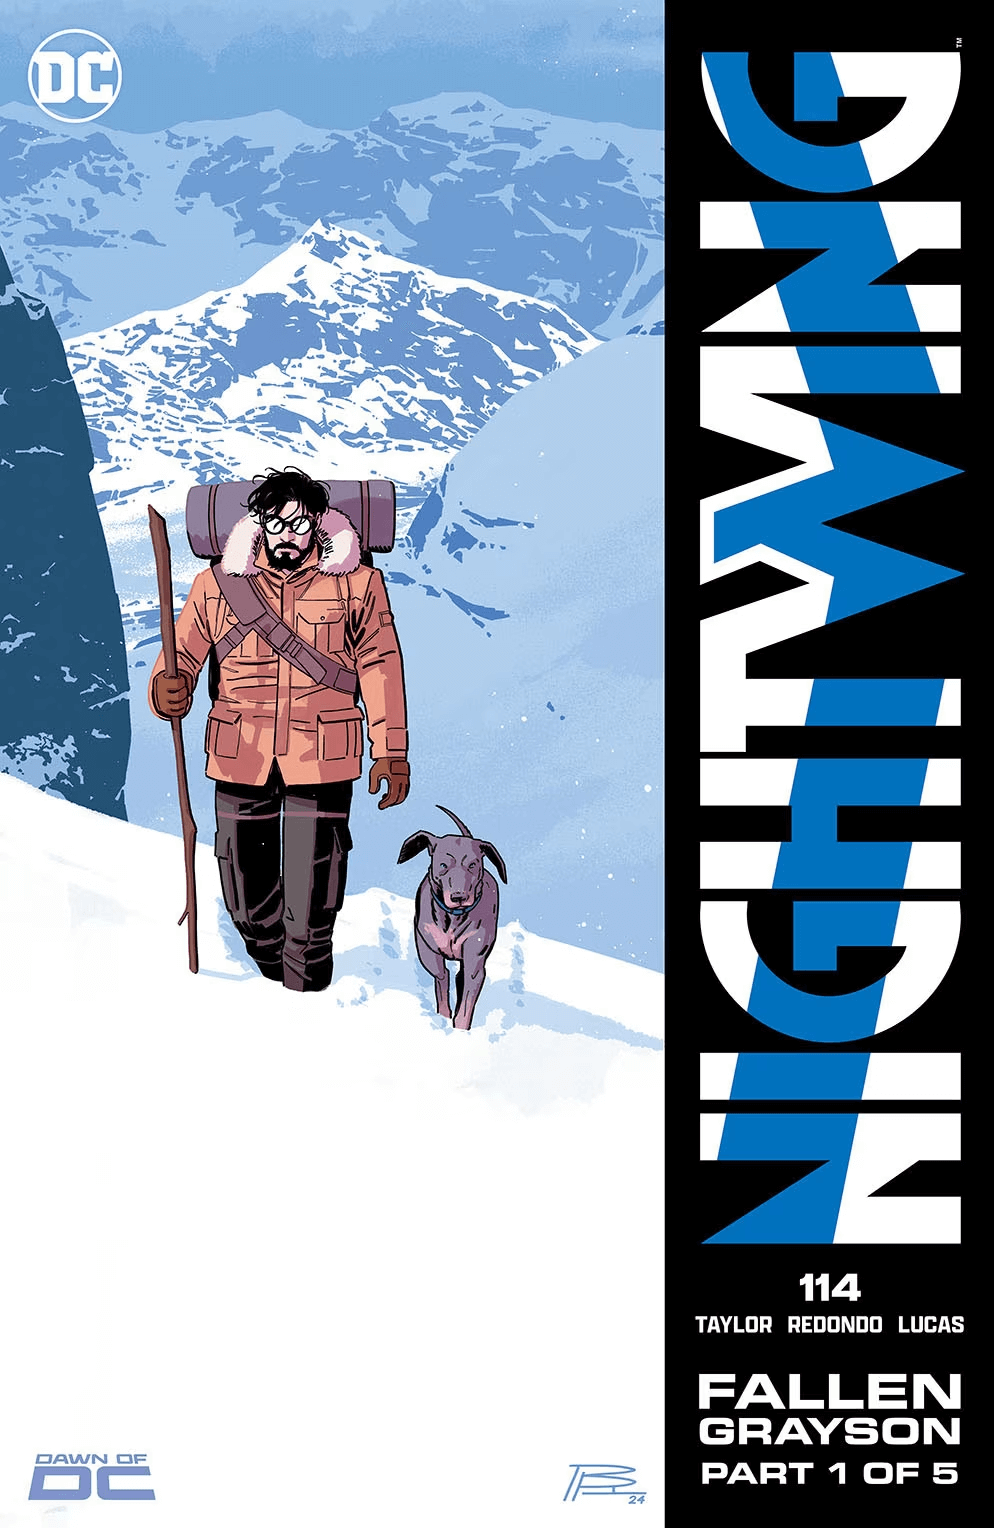 Couverture de Nightwing 114 par Bruno Redondo, premier chapitre de "Grayson déchu"